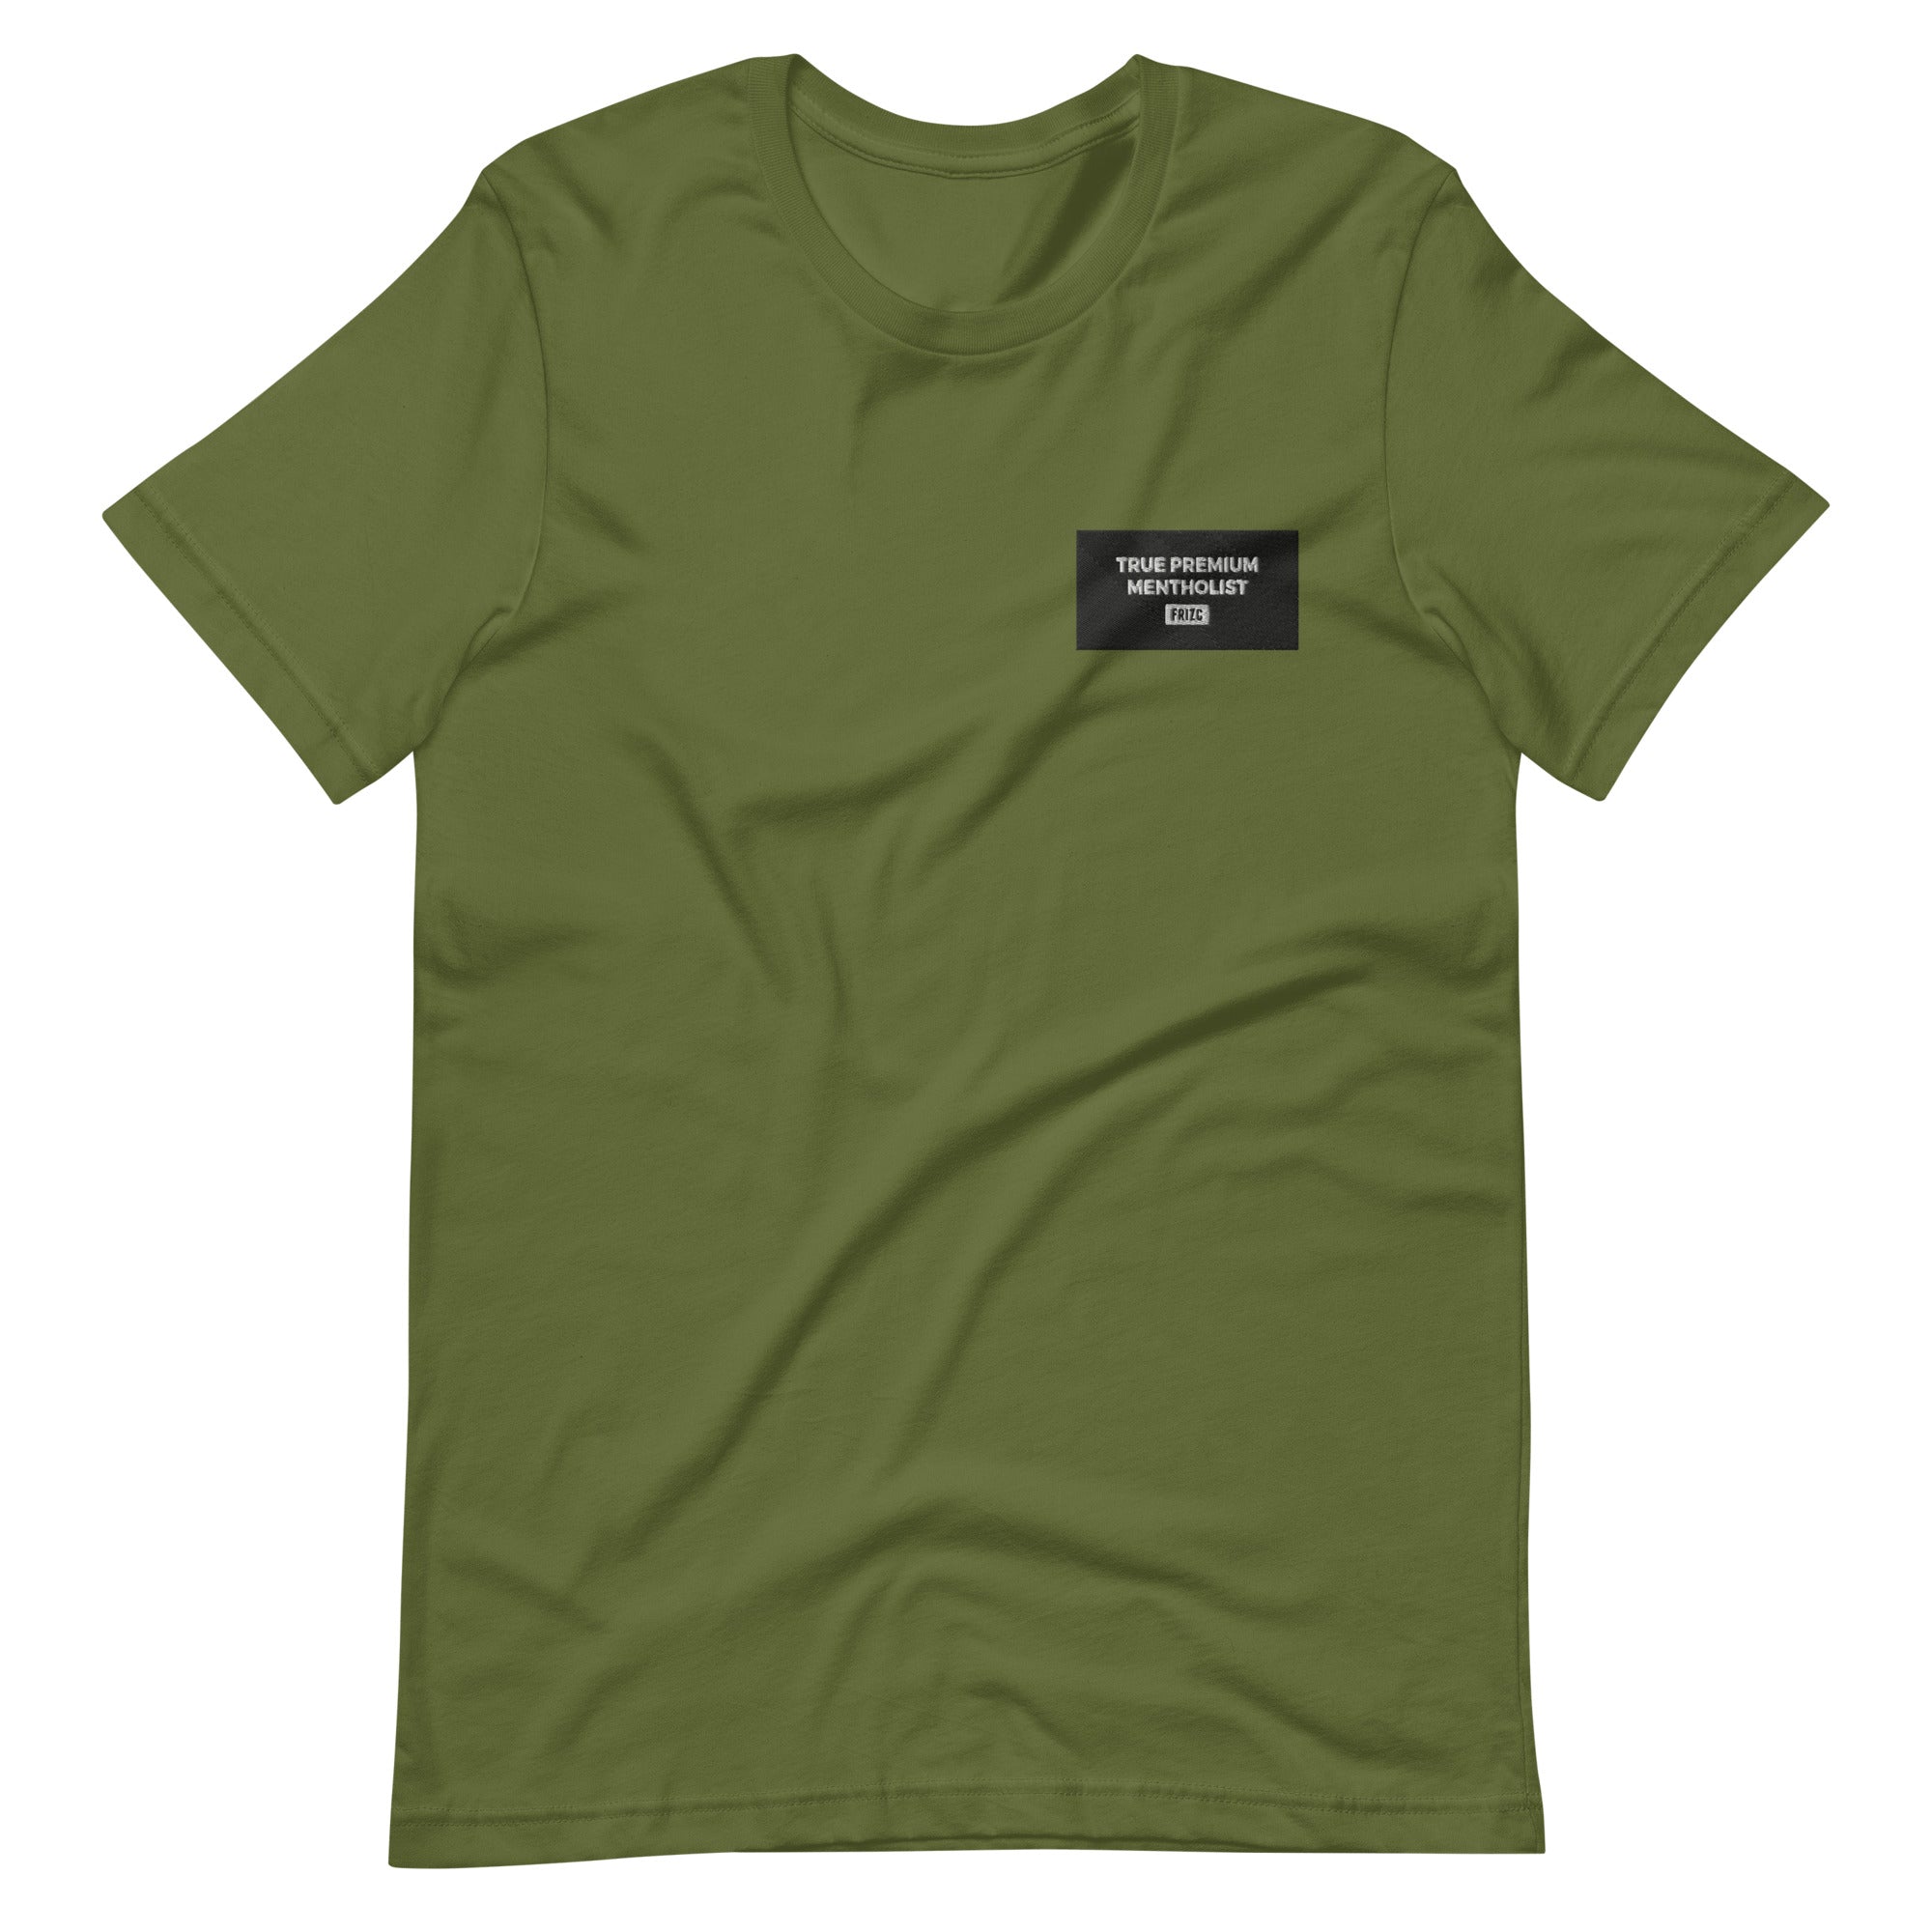 Premium Mentholist / T-Shirt Unisex t-shirt